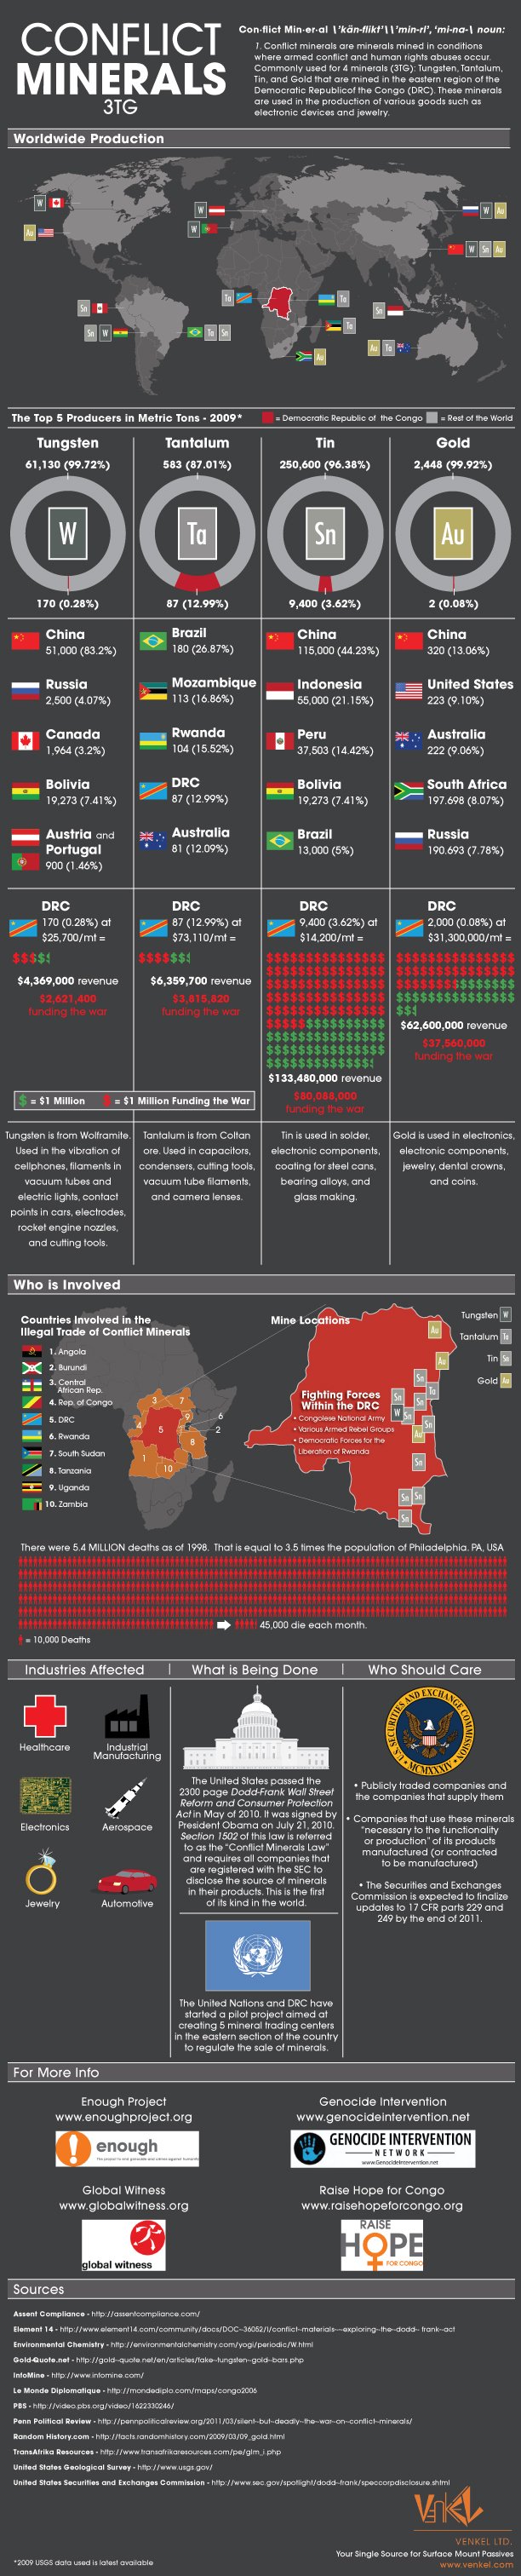 Conflict Minerals Infographic - Venkel